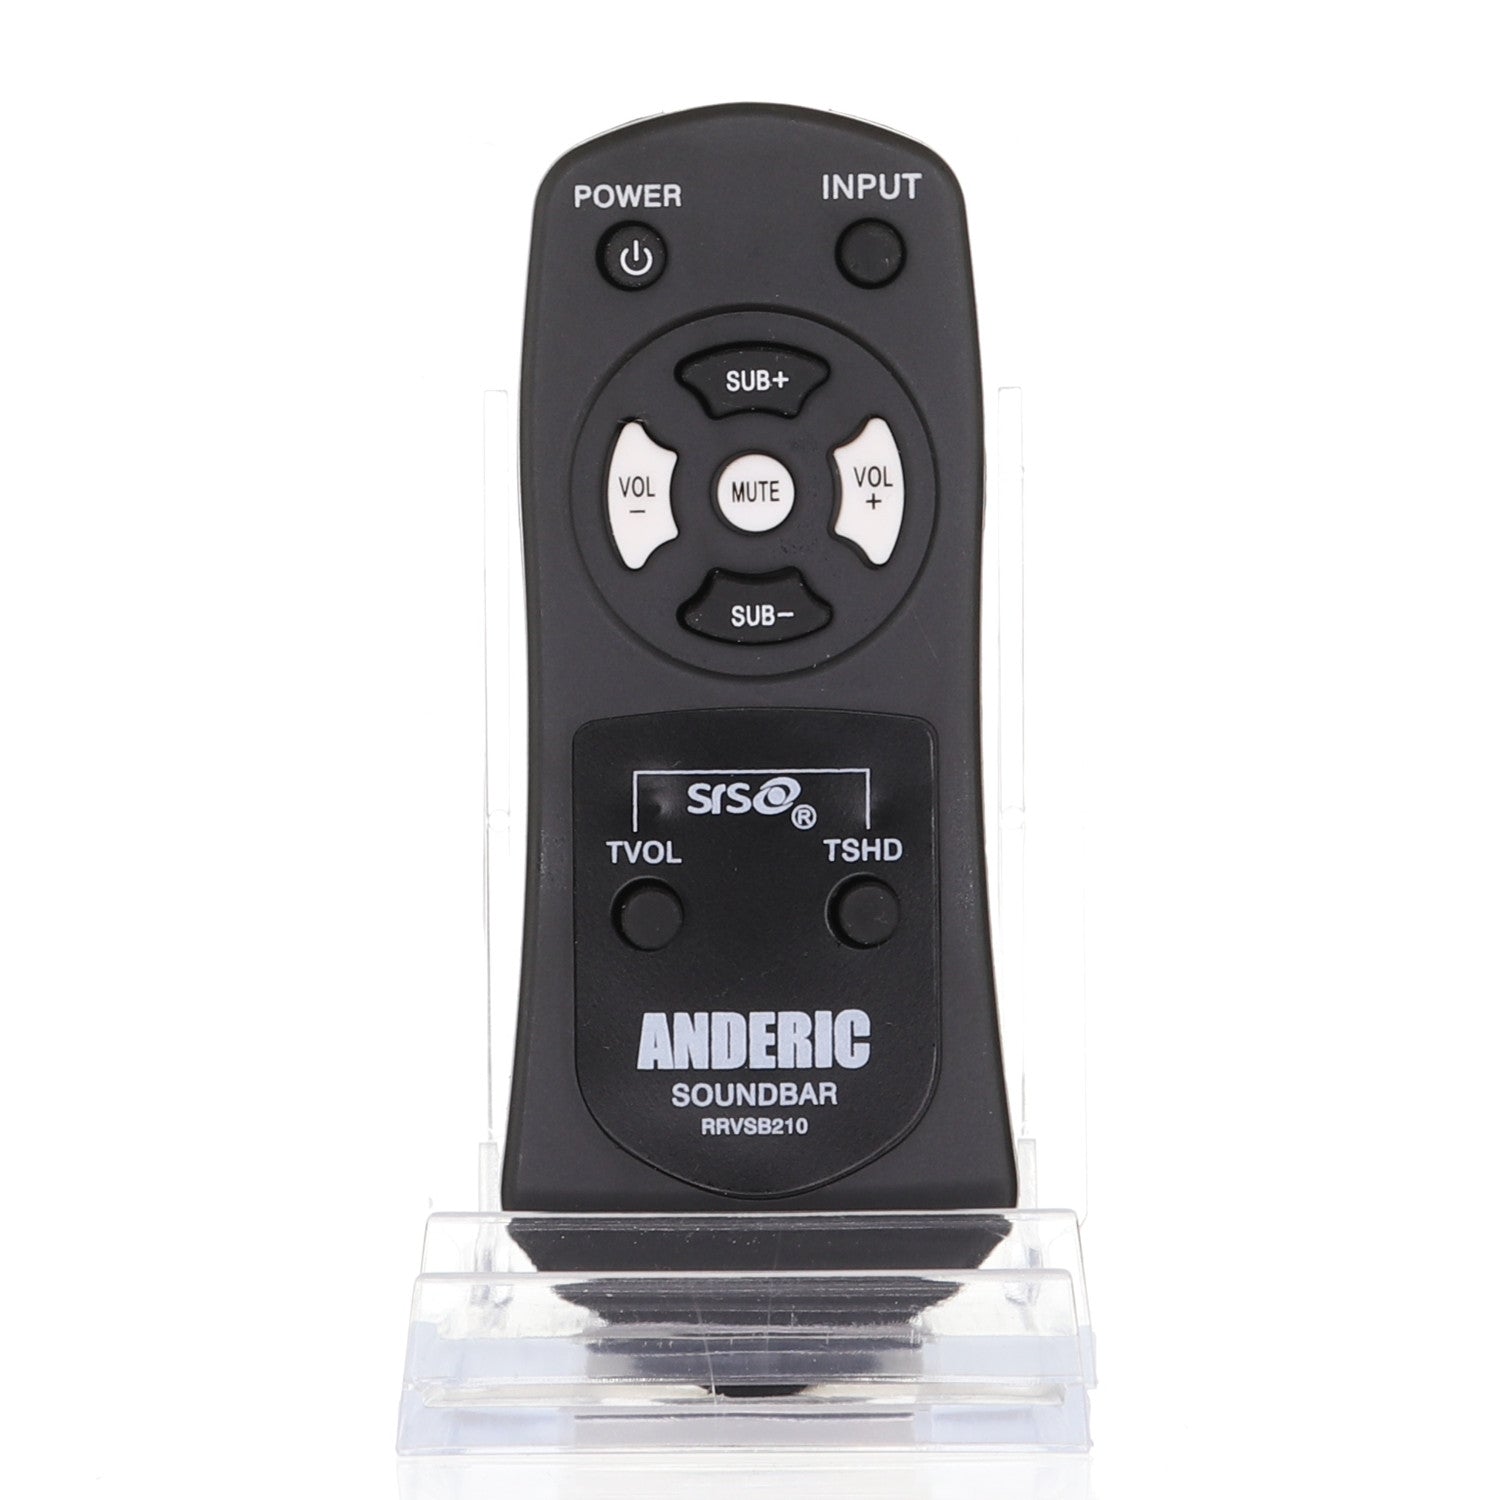 RRVSB210 Remote Control for Vizio® Sound Bar Systems